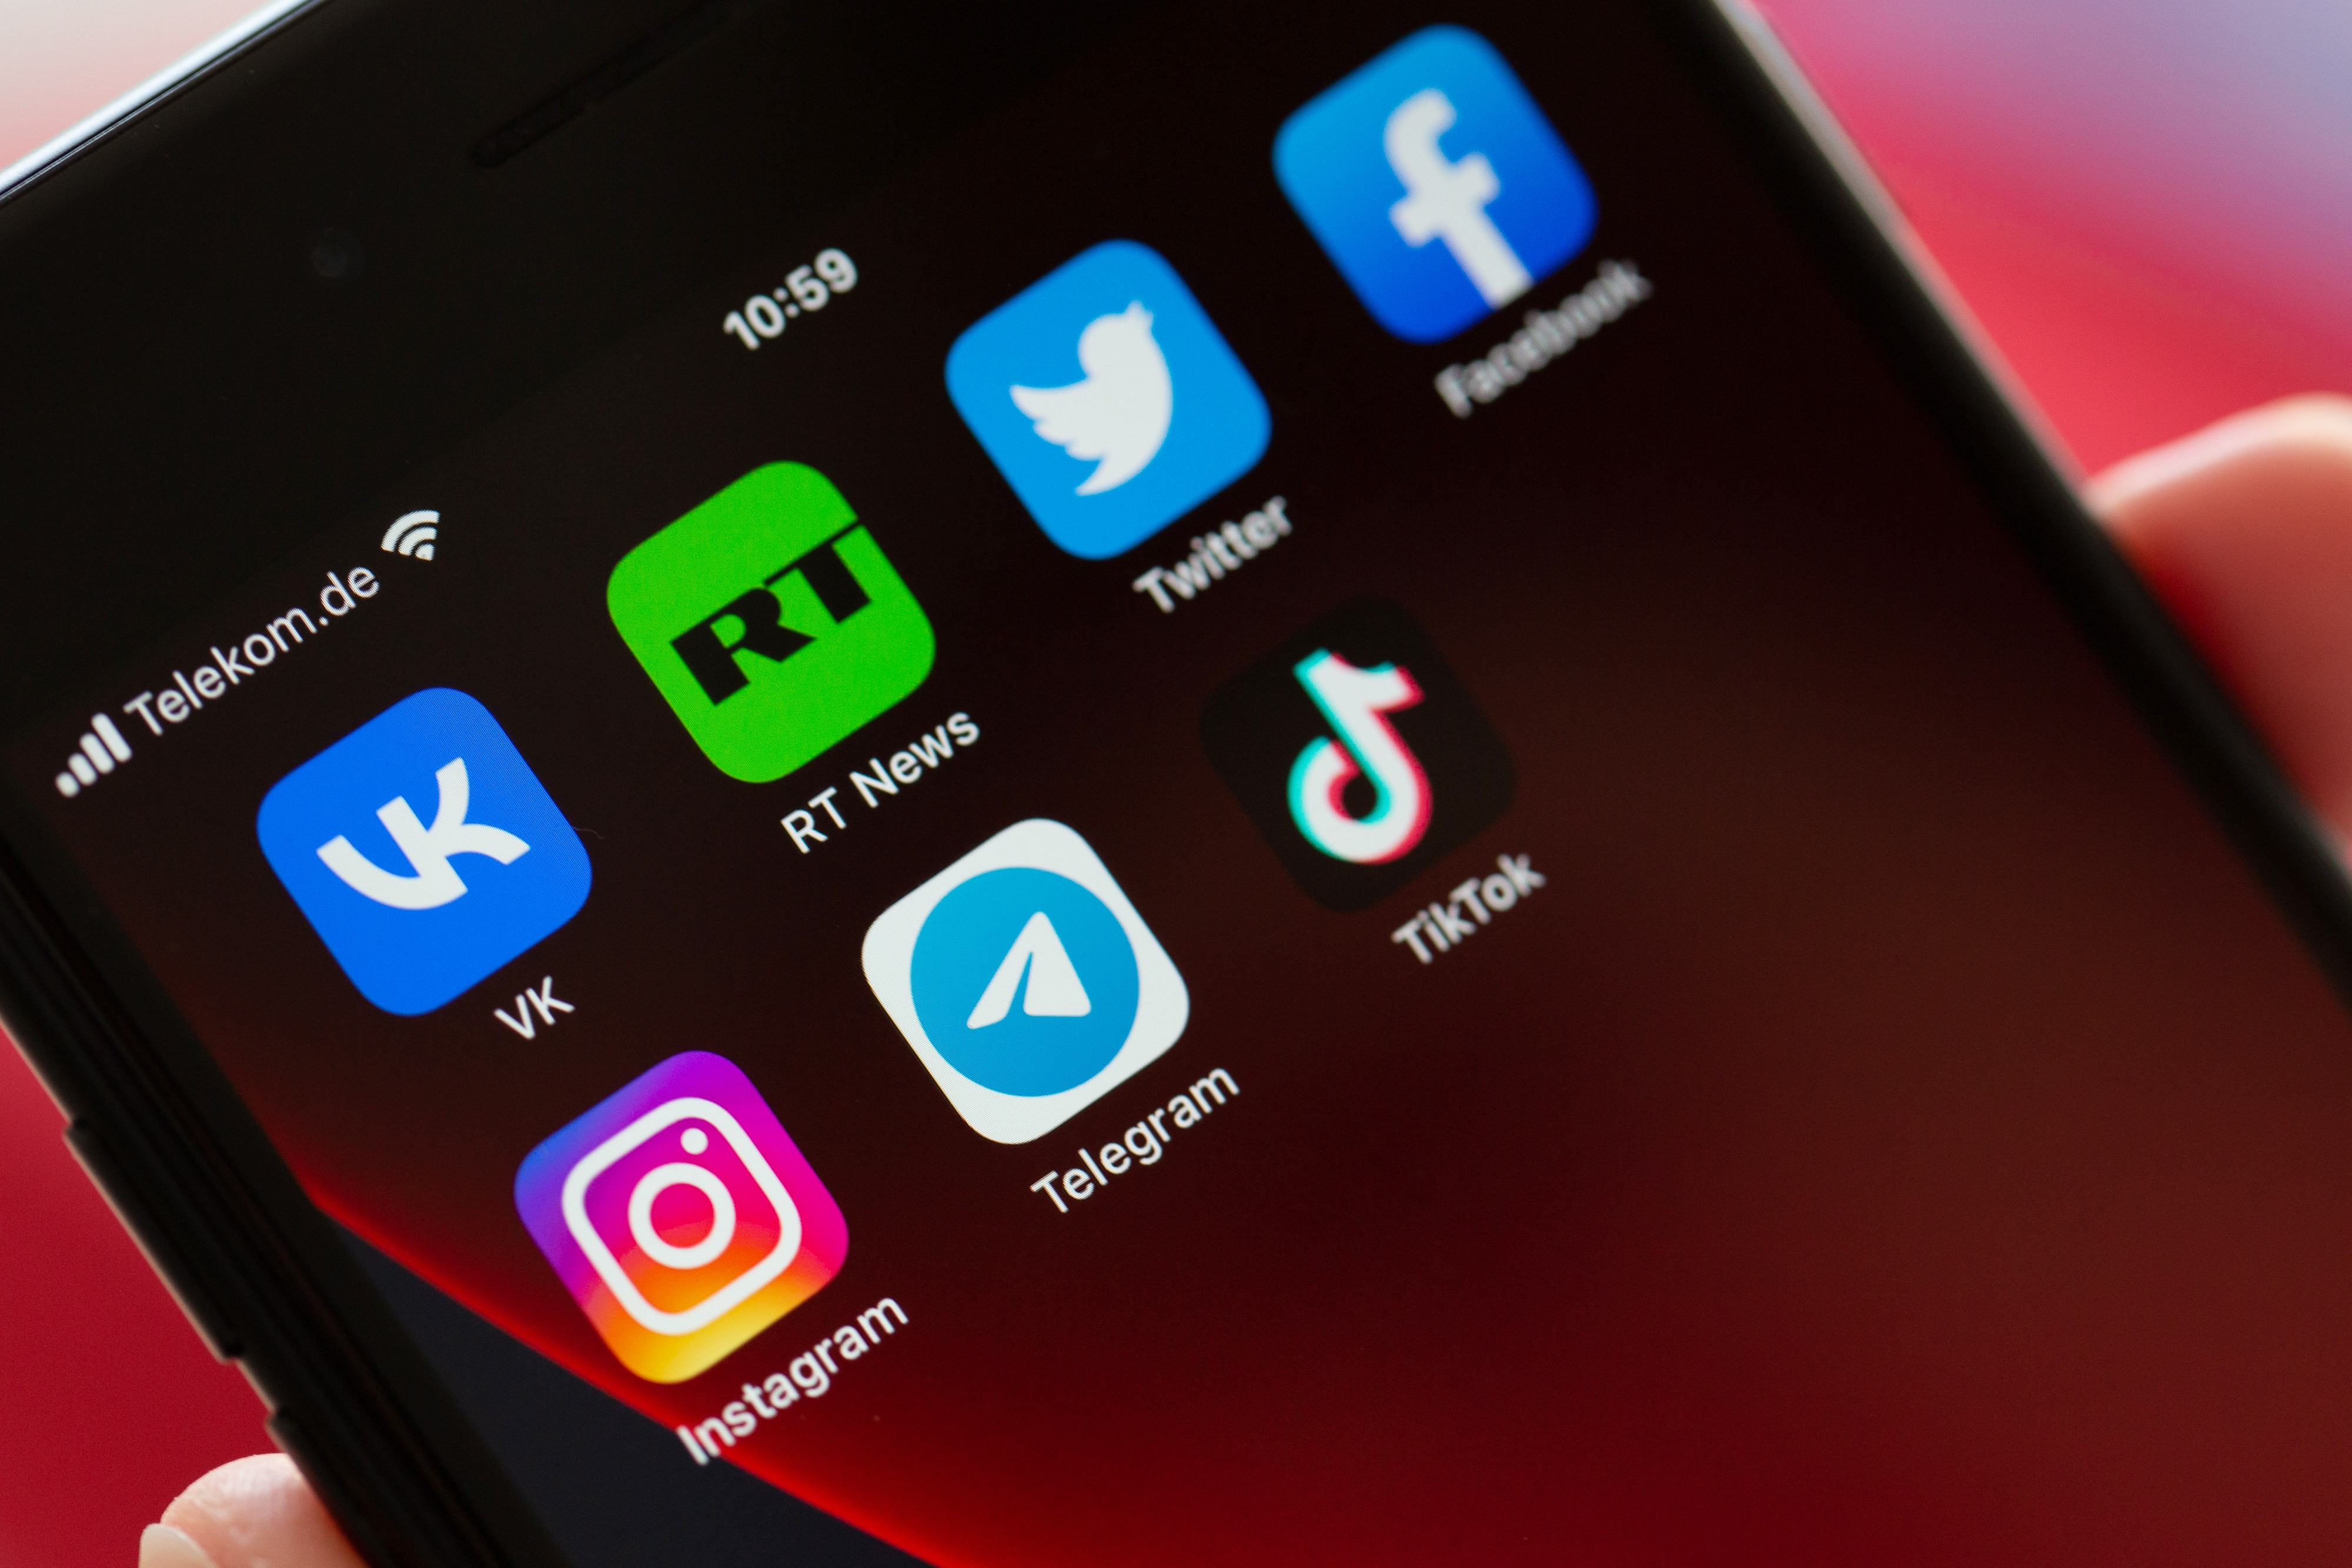 Auf dem Bildschirm eines Smartphones sind die Logos der Apps VKontakte (oben l-r), Twitter, RT News, Facebook, Instagram (unten l-r), Telegram und TikTok zu sehen.